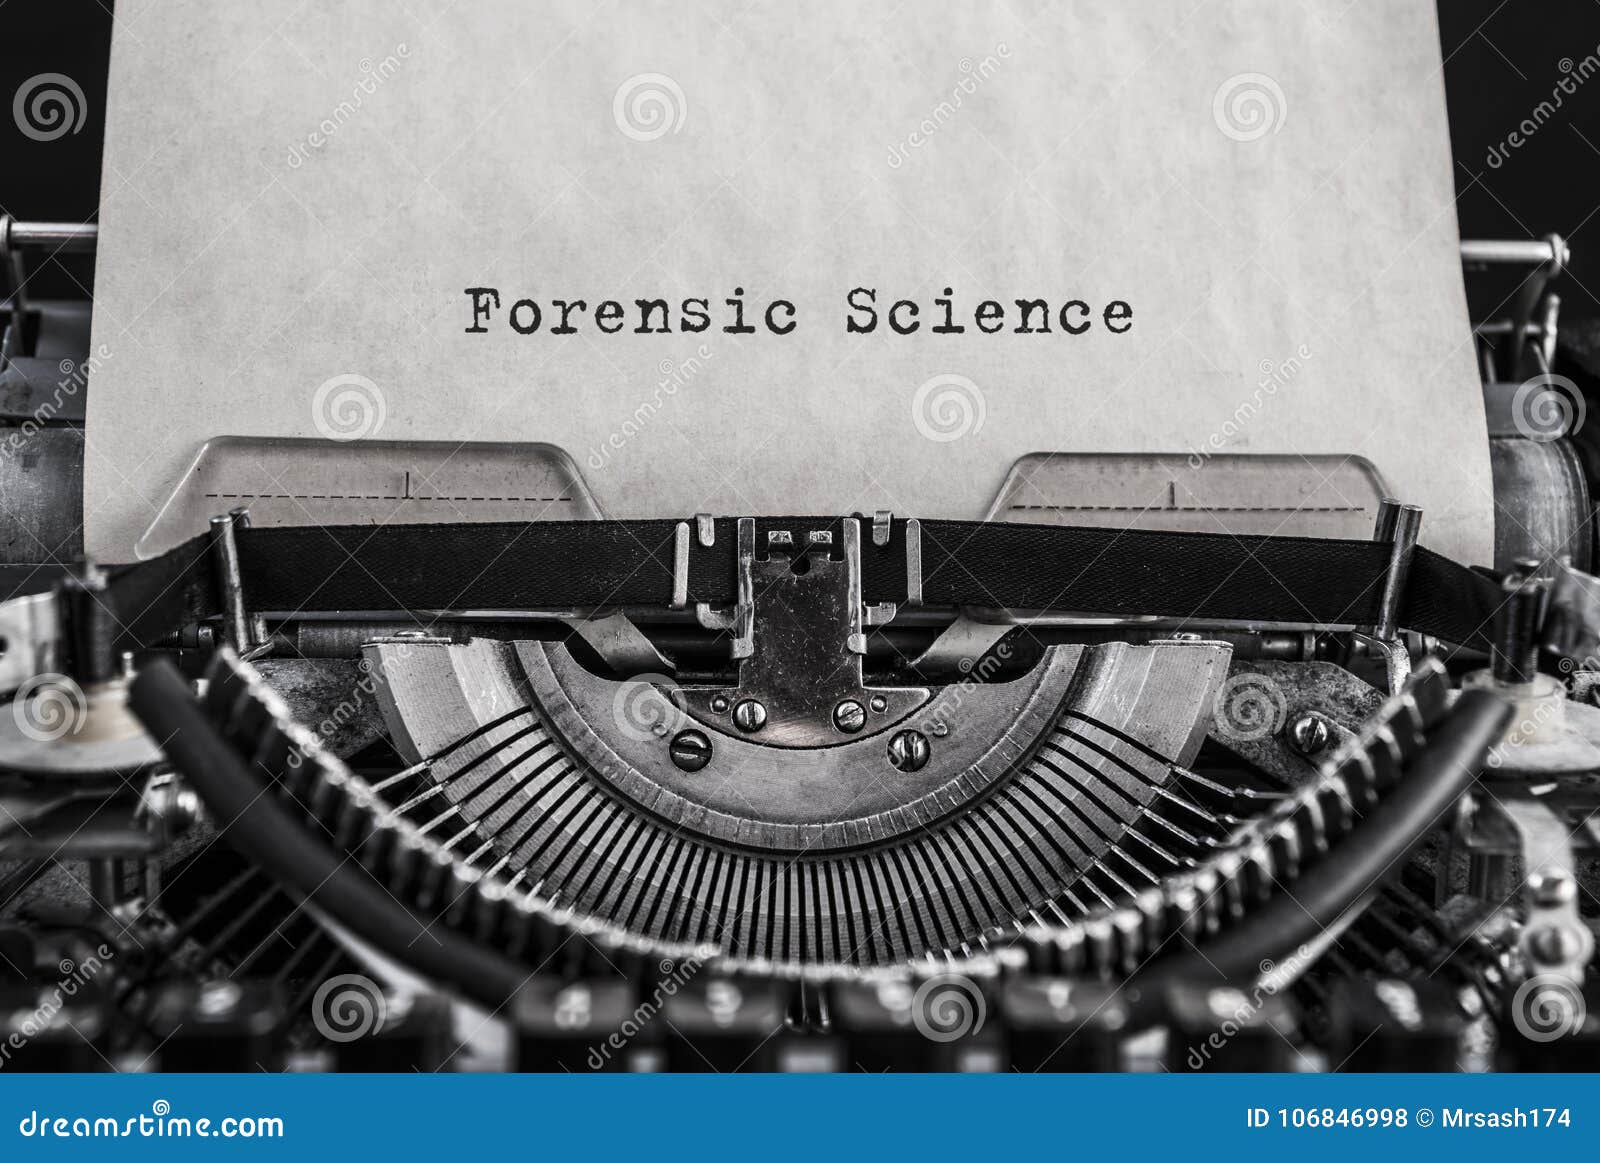 forensic science words typed on vintage typewriter.